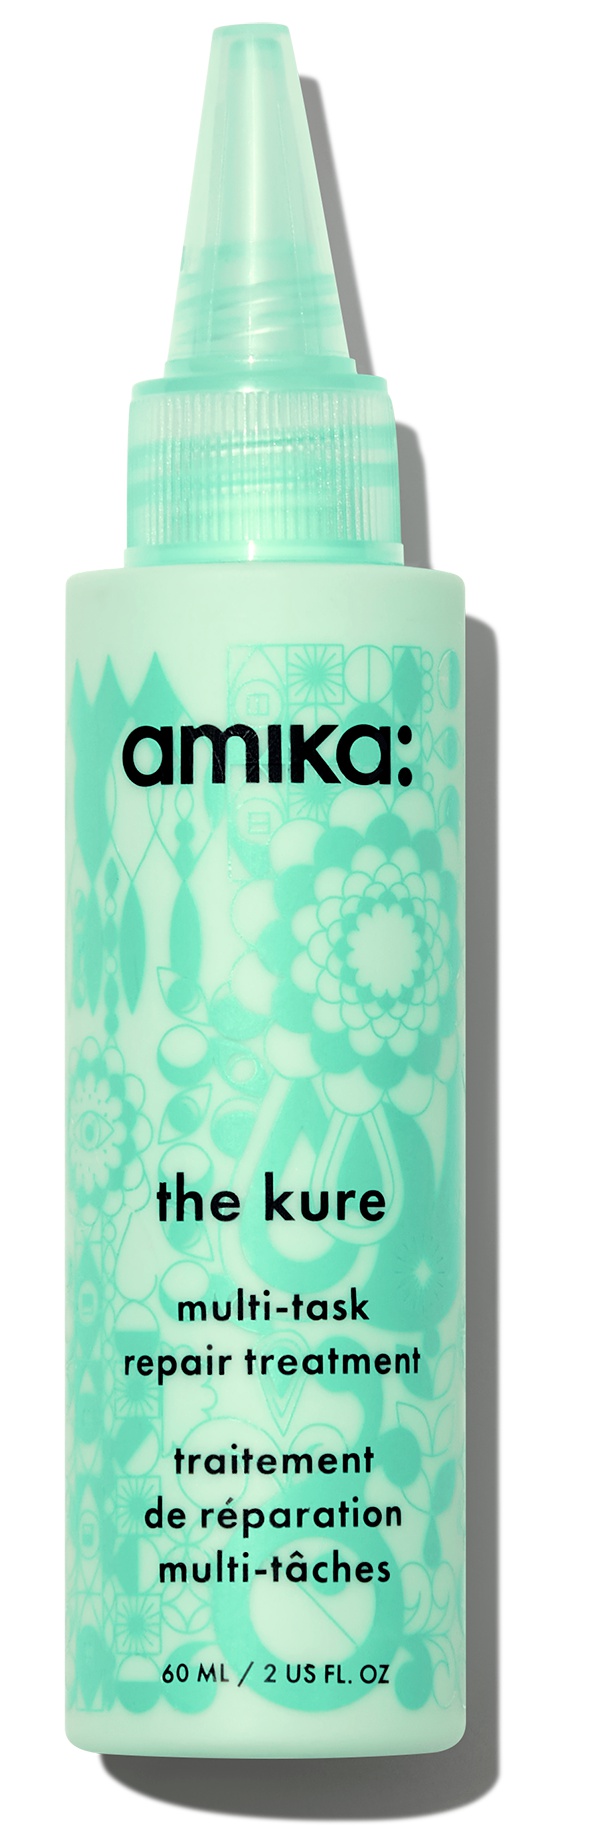 Amika The Kure Multi-Task Repair Treatment